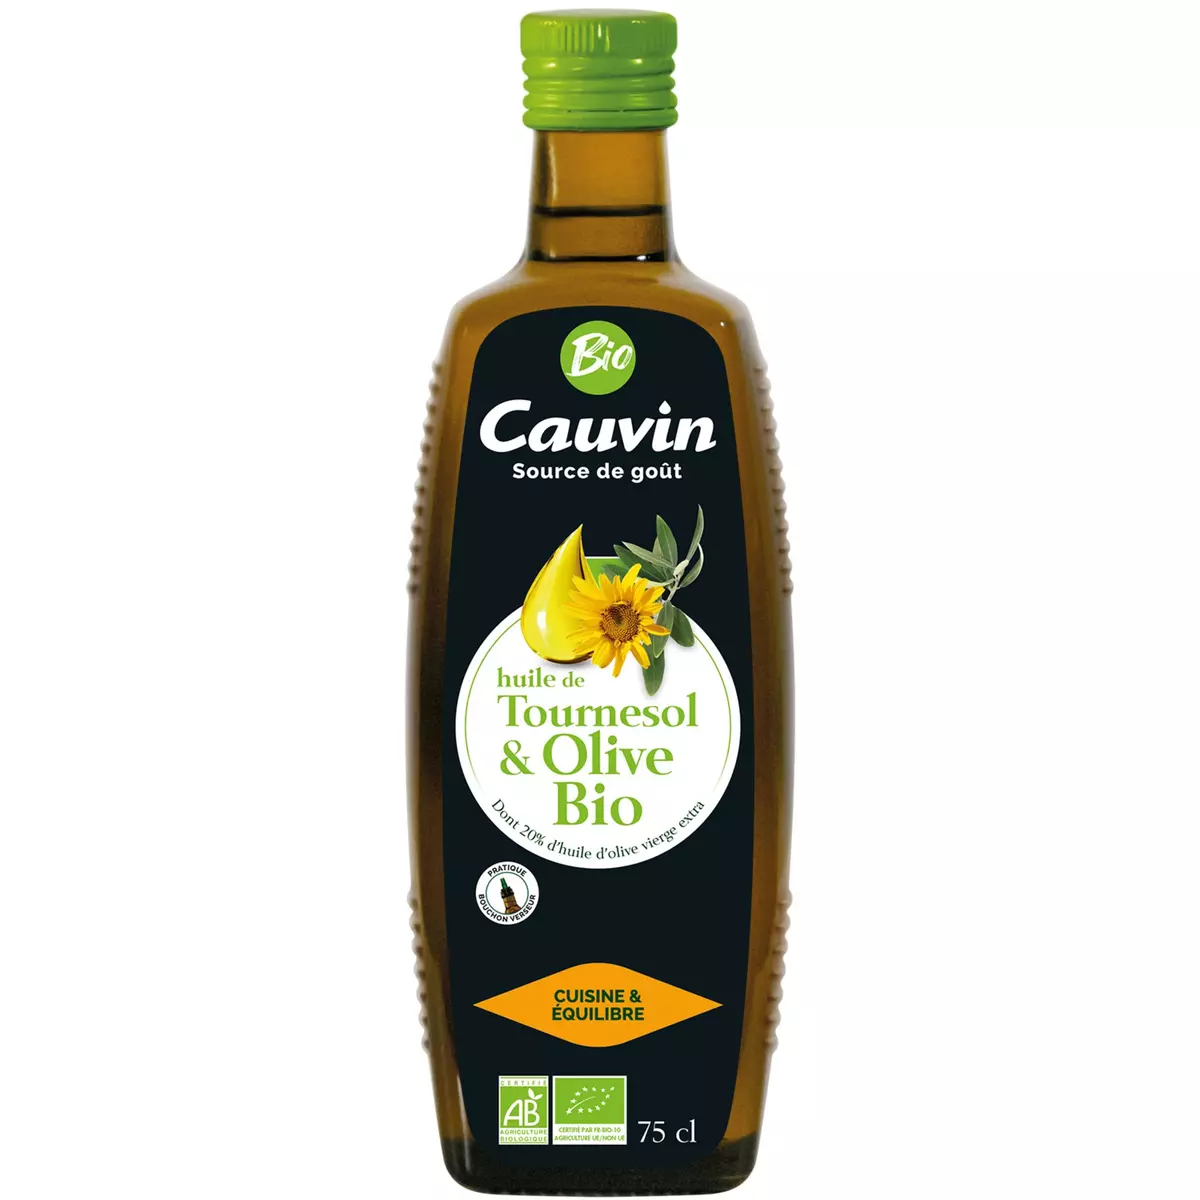 CAUVIN Huile de tournesol et olive bio avec bouchon verseur 75cl